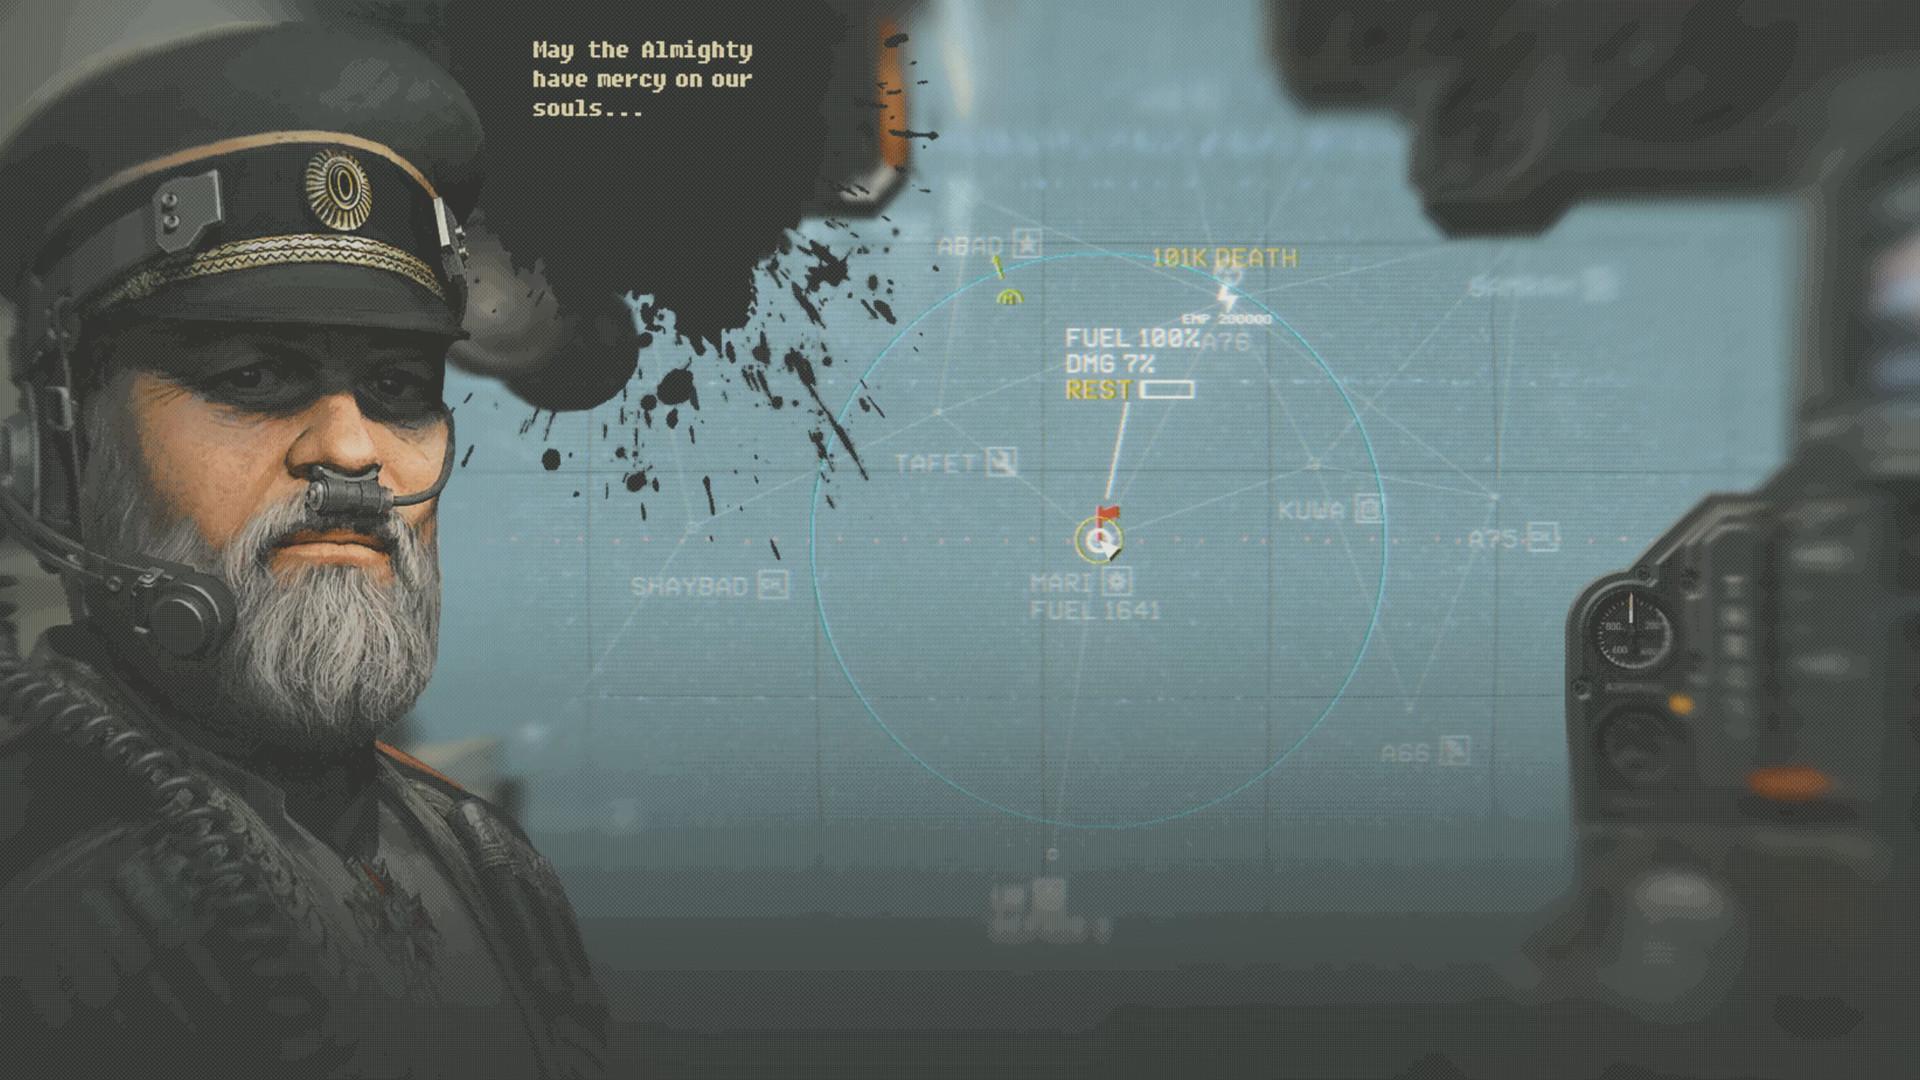 Screenshot №3 from game HighFleet